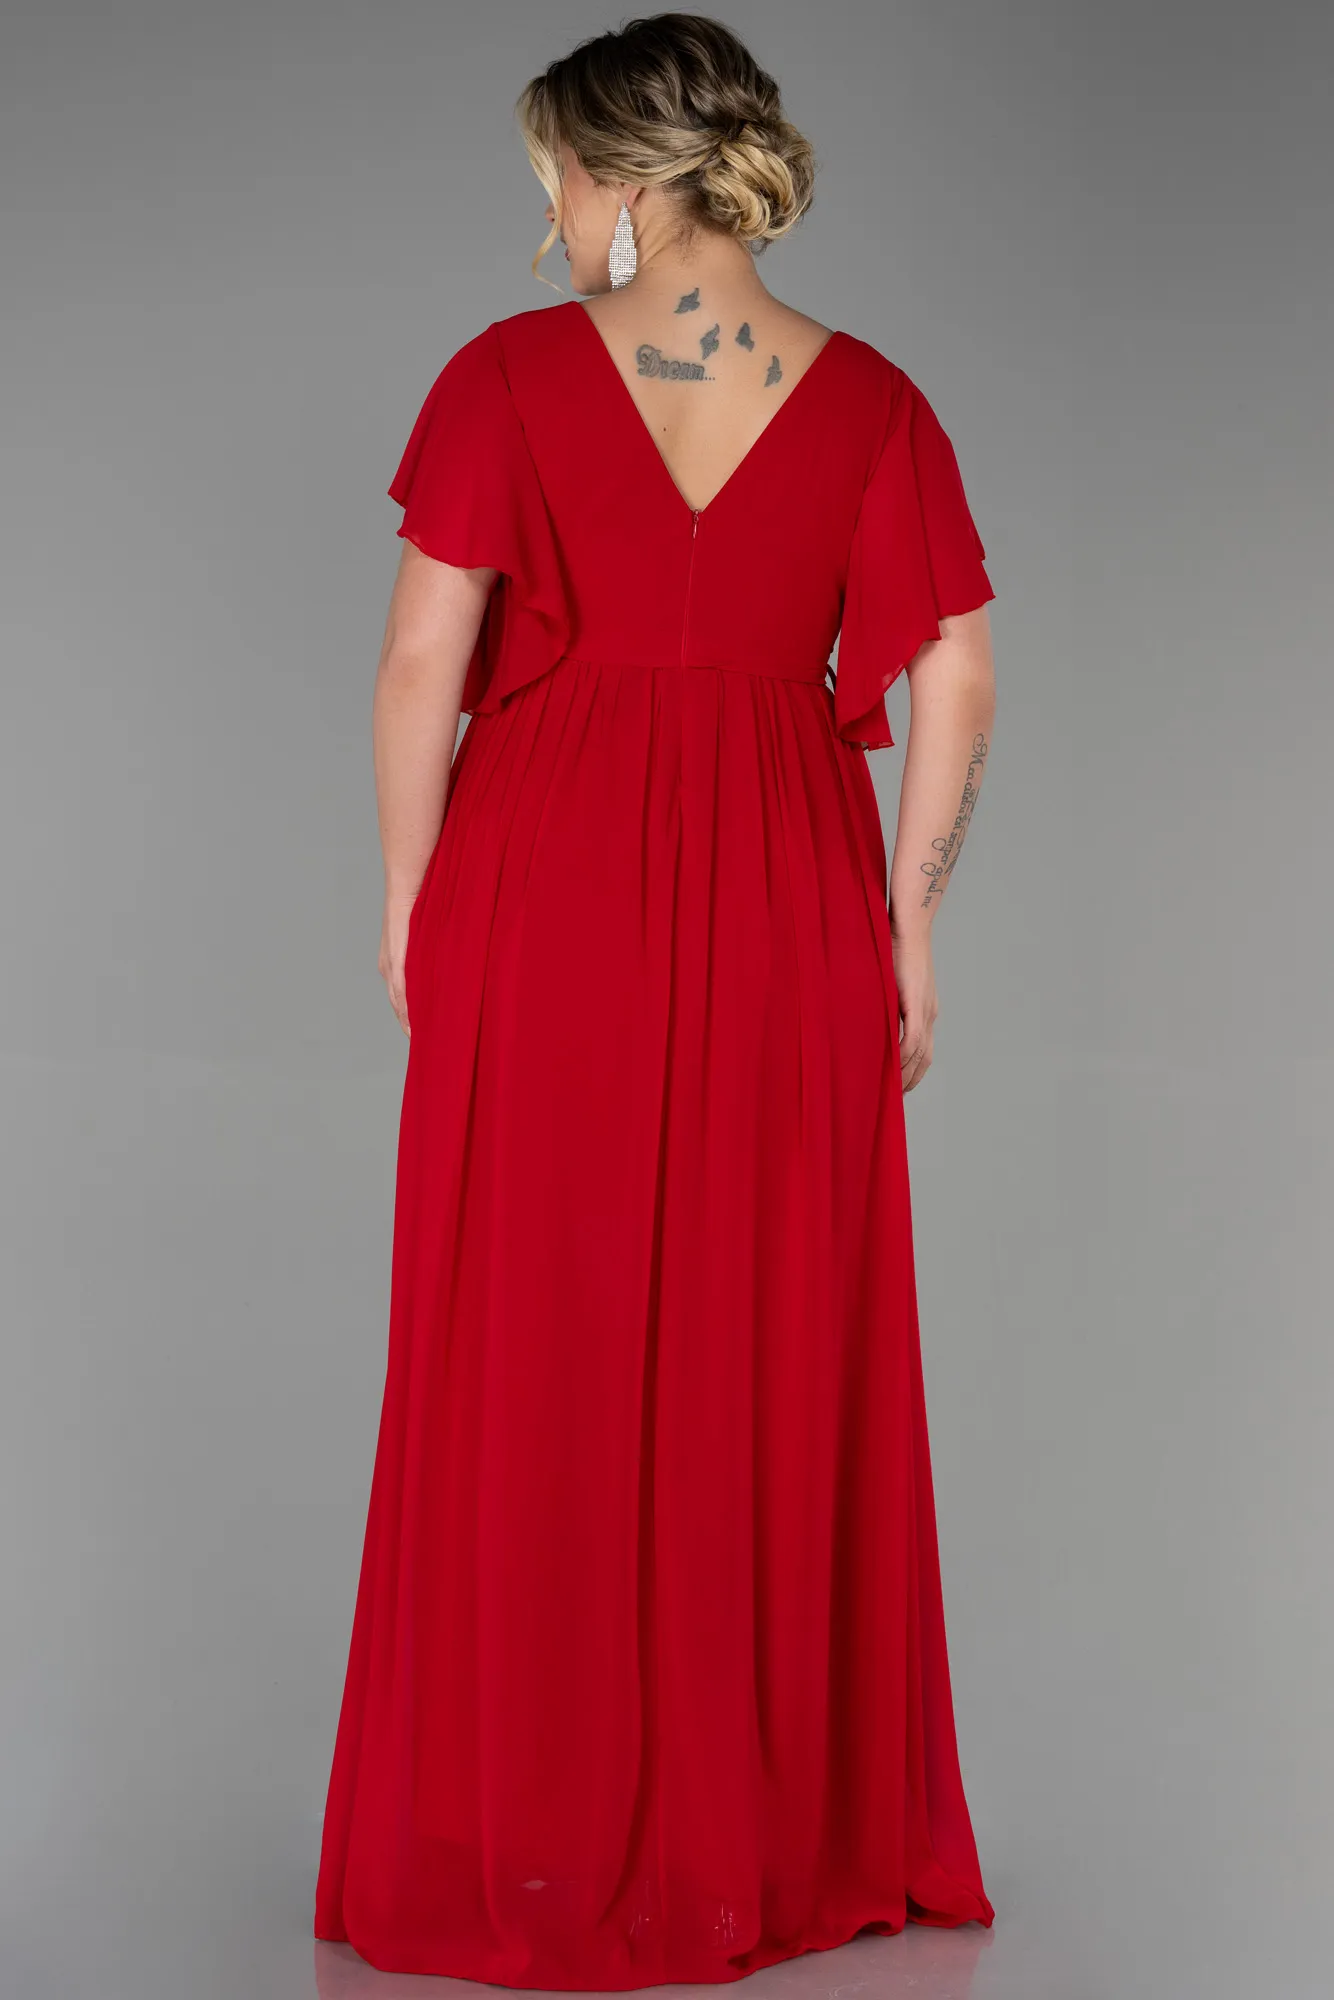 Red-Long Chiffon Plus Size Evening Dress ABU3276